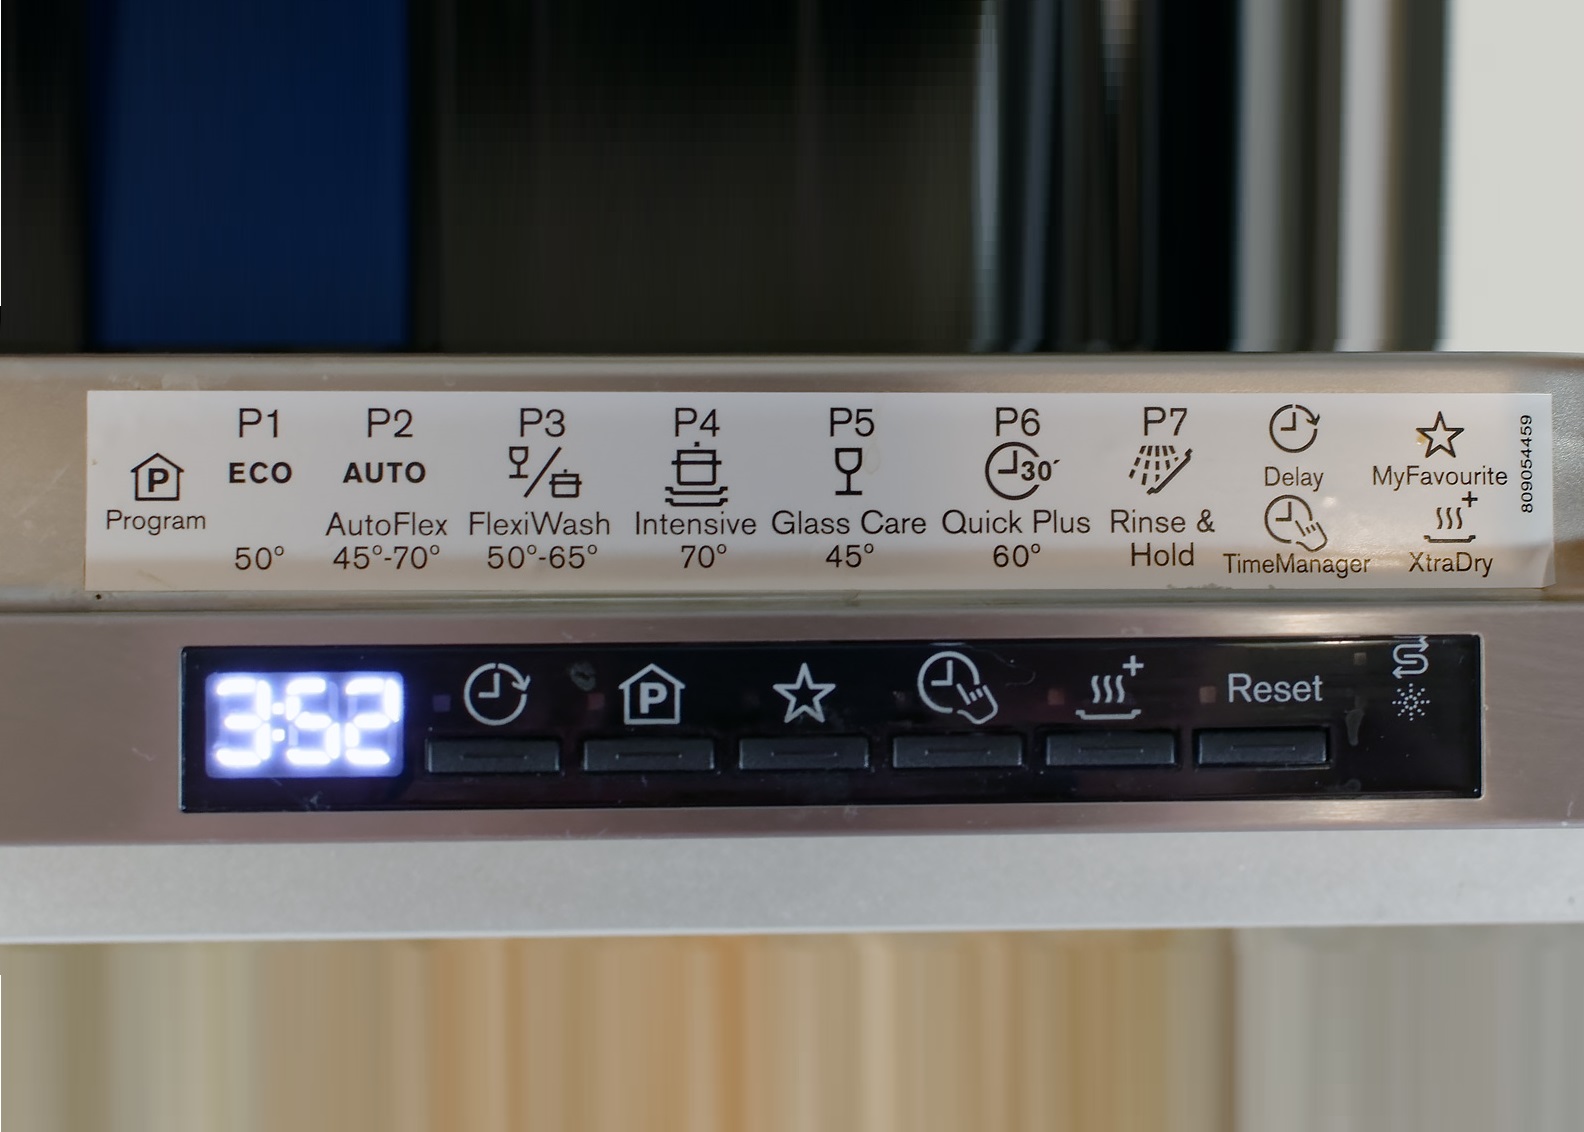 Szimbólumok az Electrolux mosogatógépen